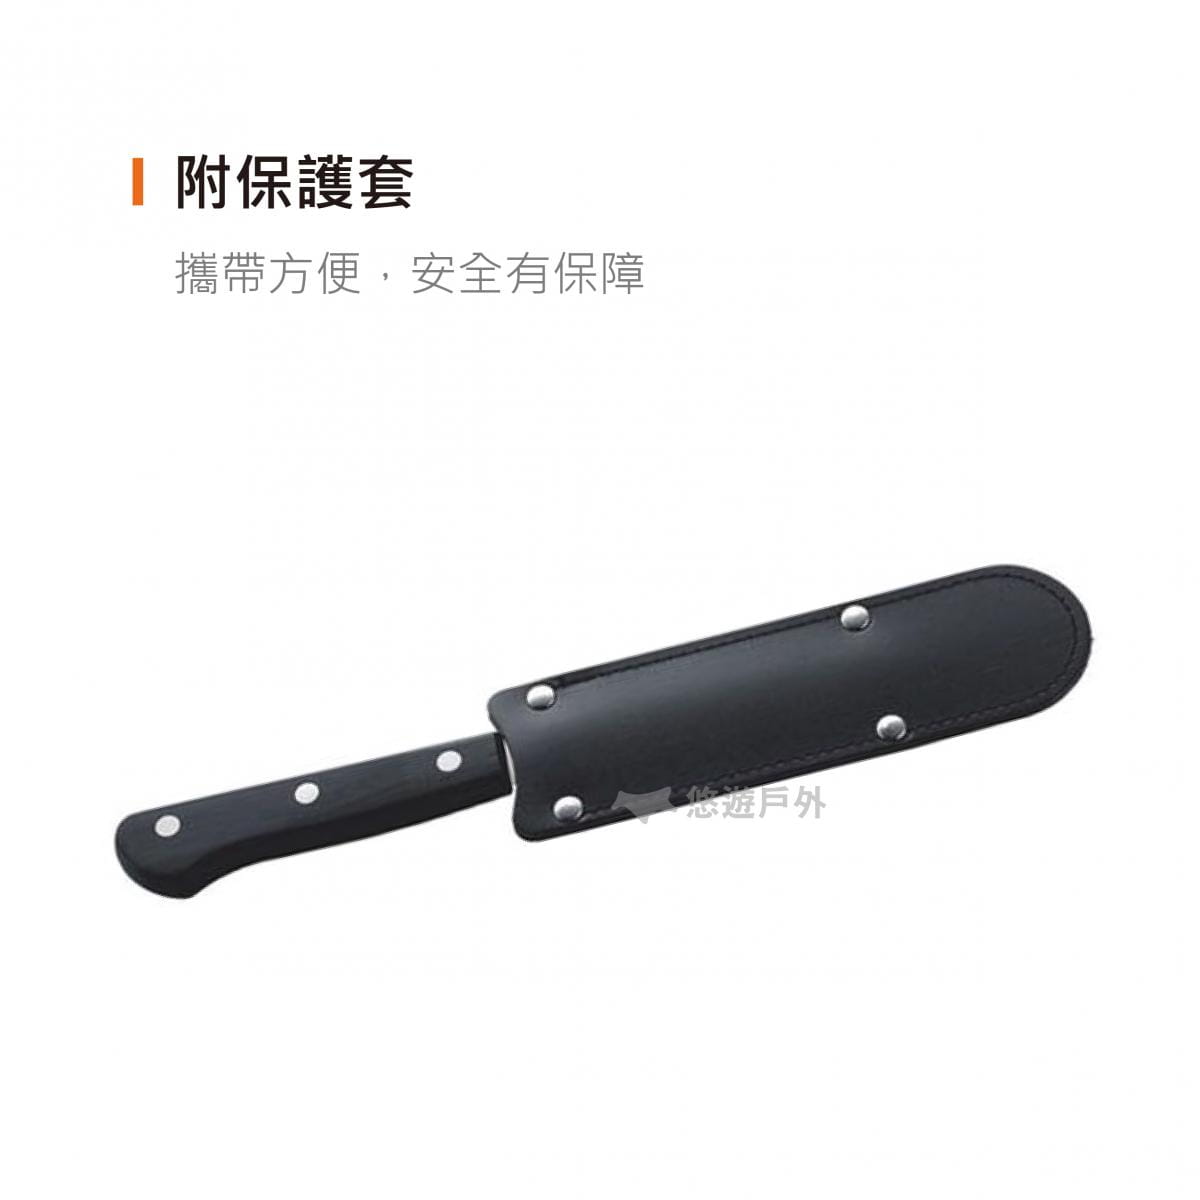 【悠遊戶外】日本UNIFLAME 鋸齒水果刀 U661819 2